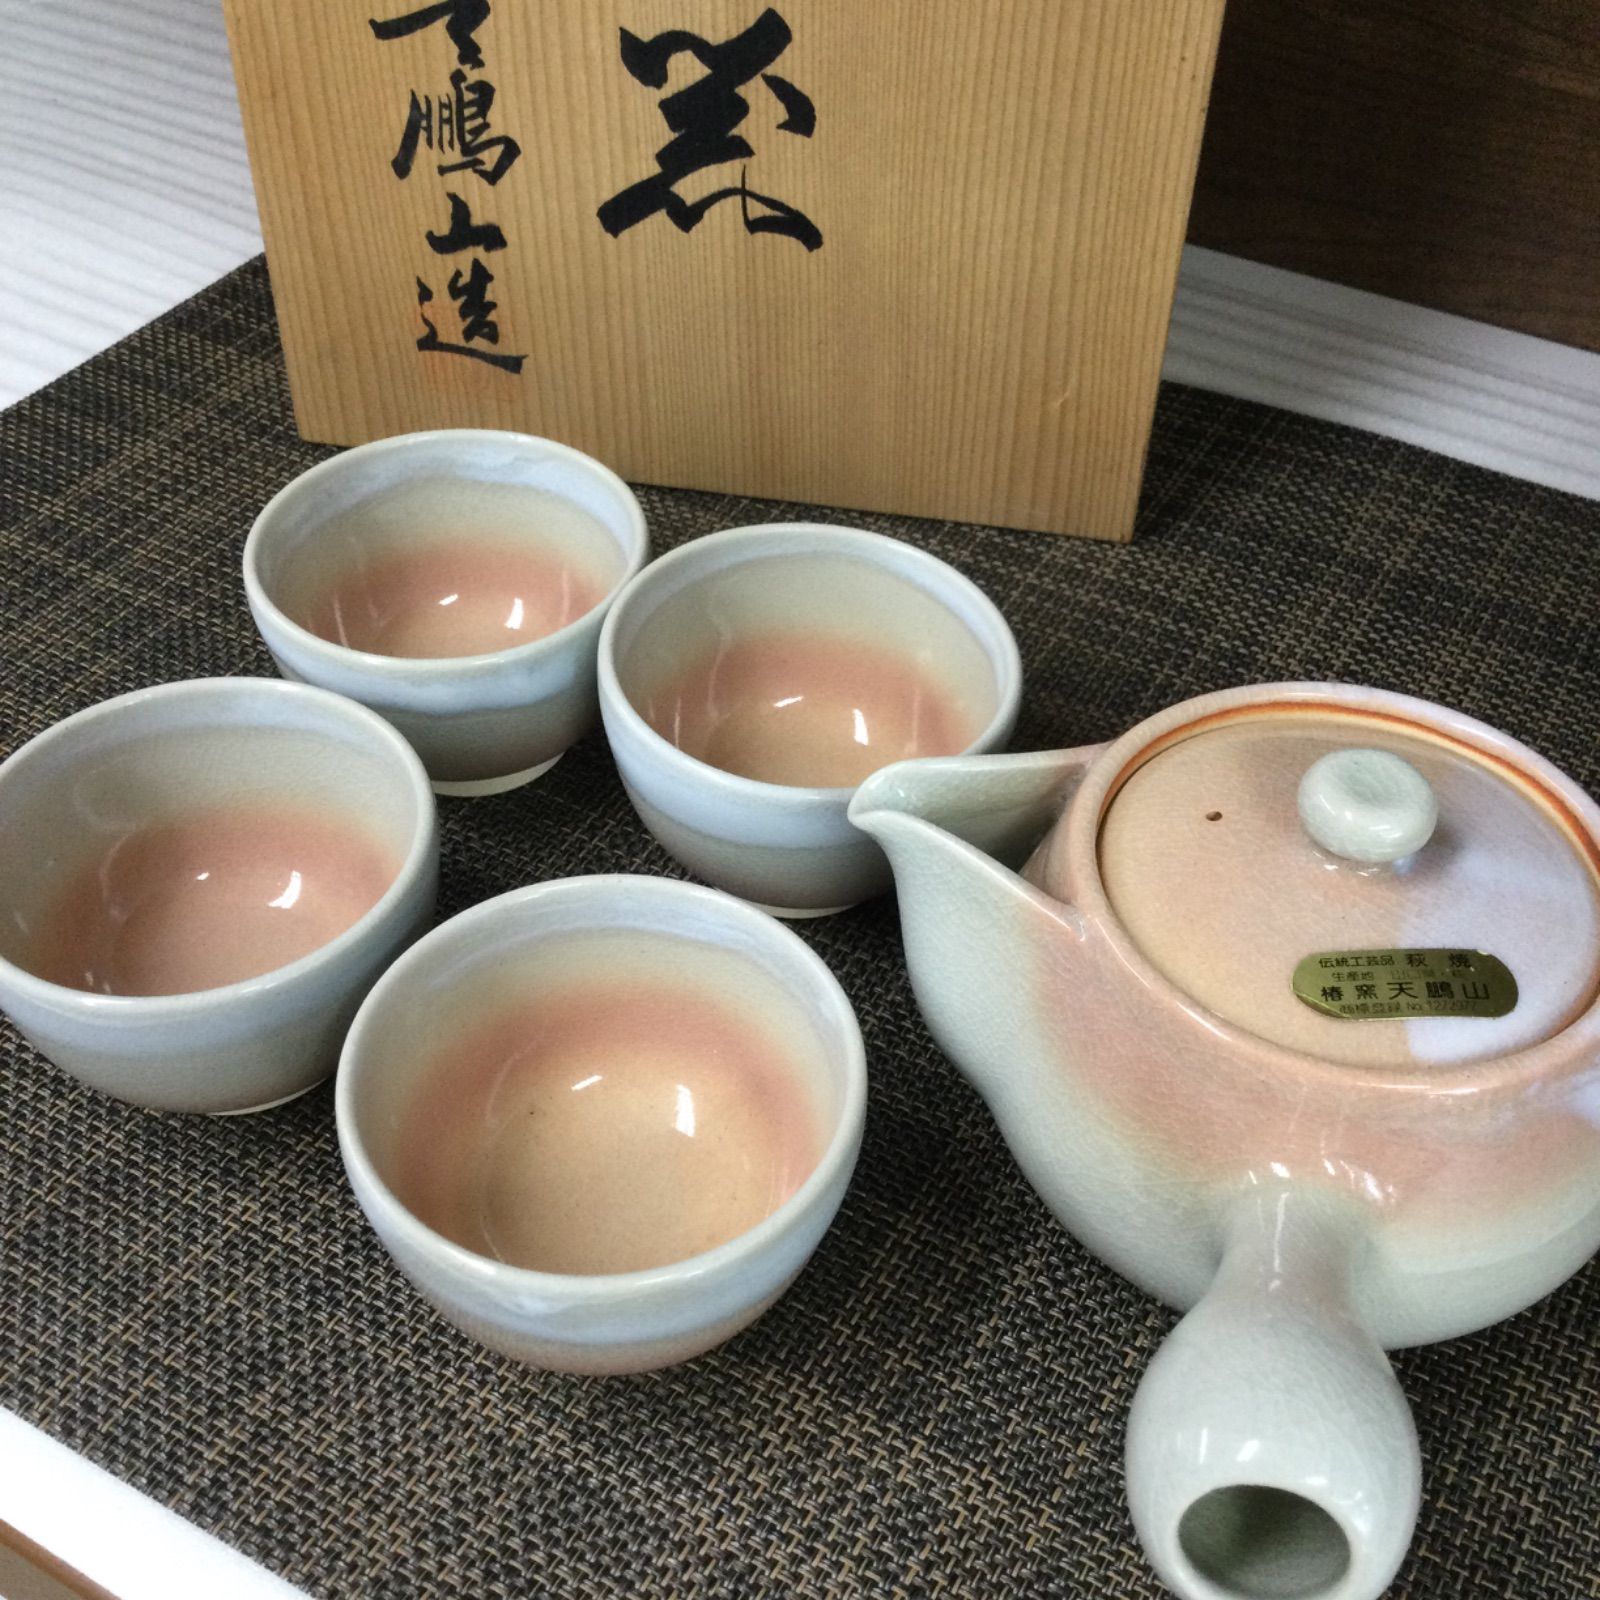 萩焼 天鵬山 茶器セット - メルカリ